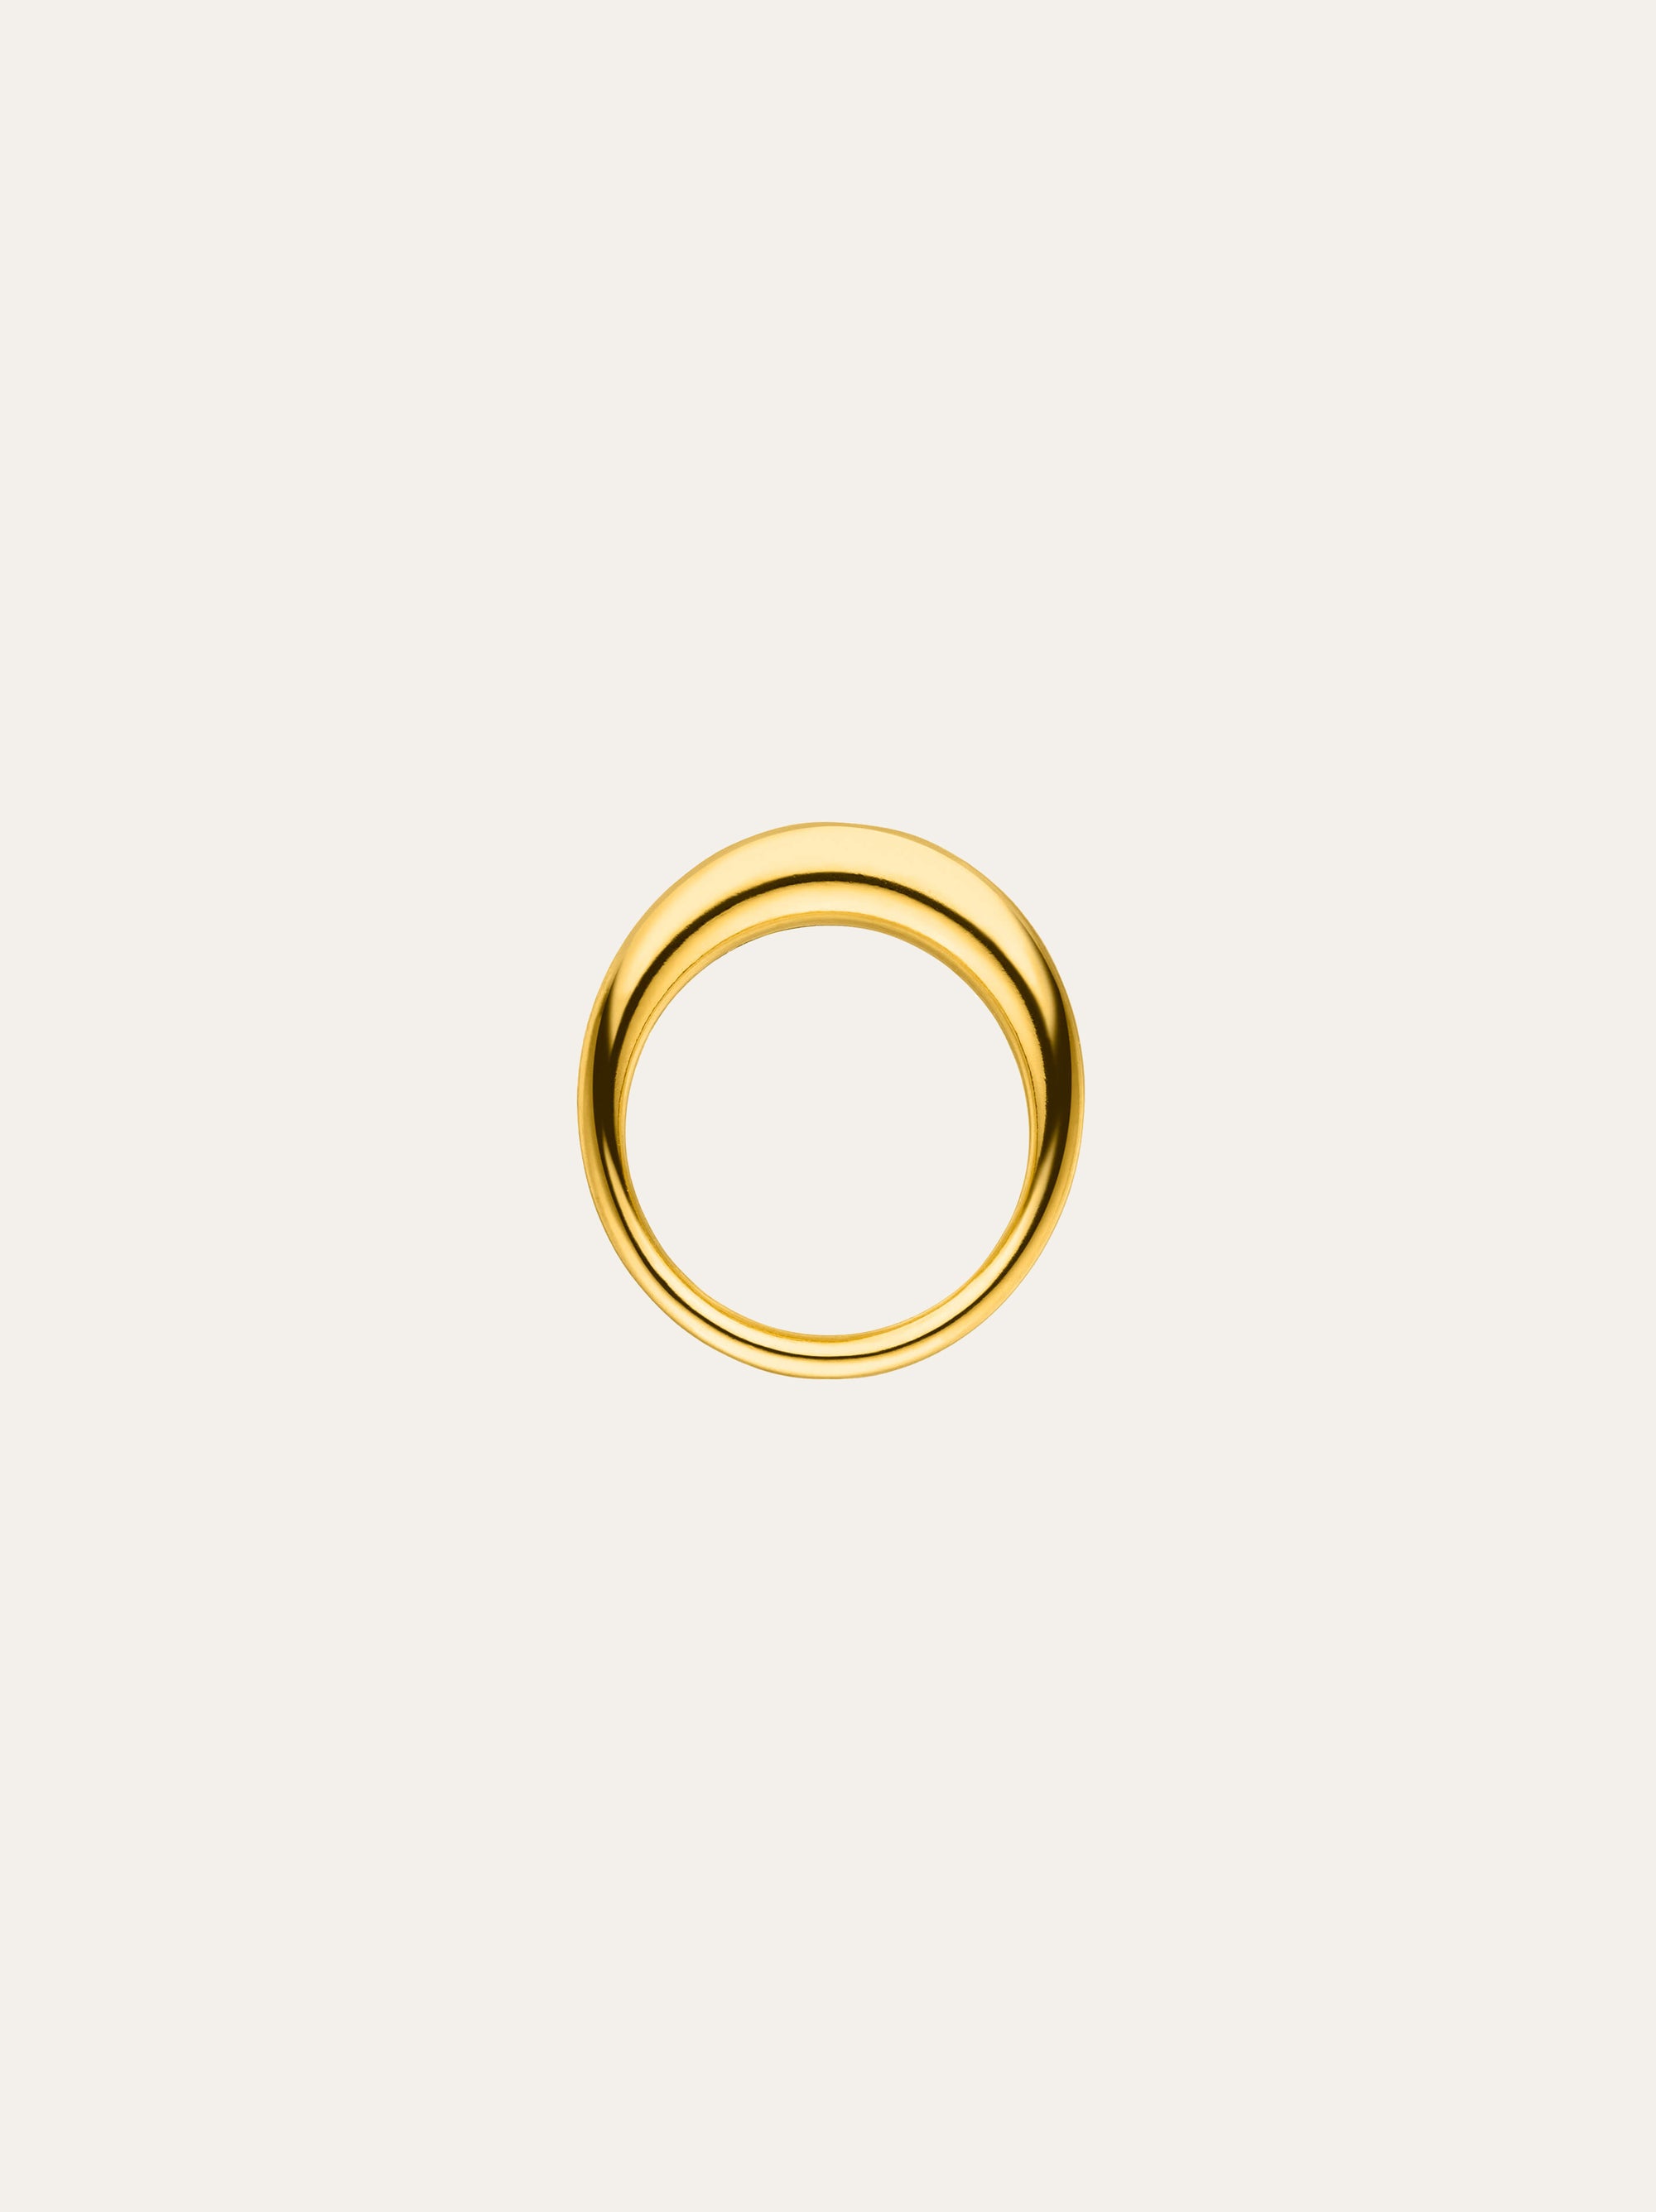 idamari continuum gold ring 